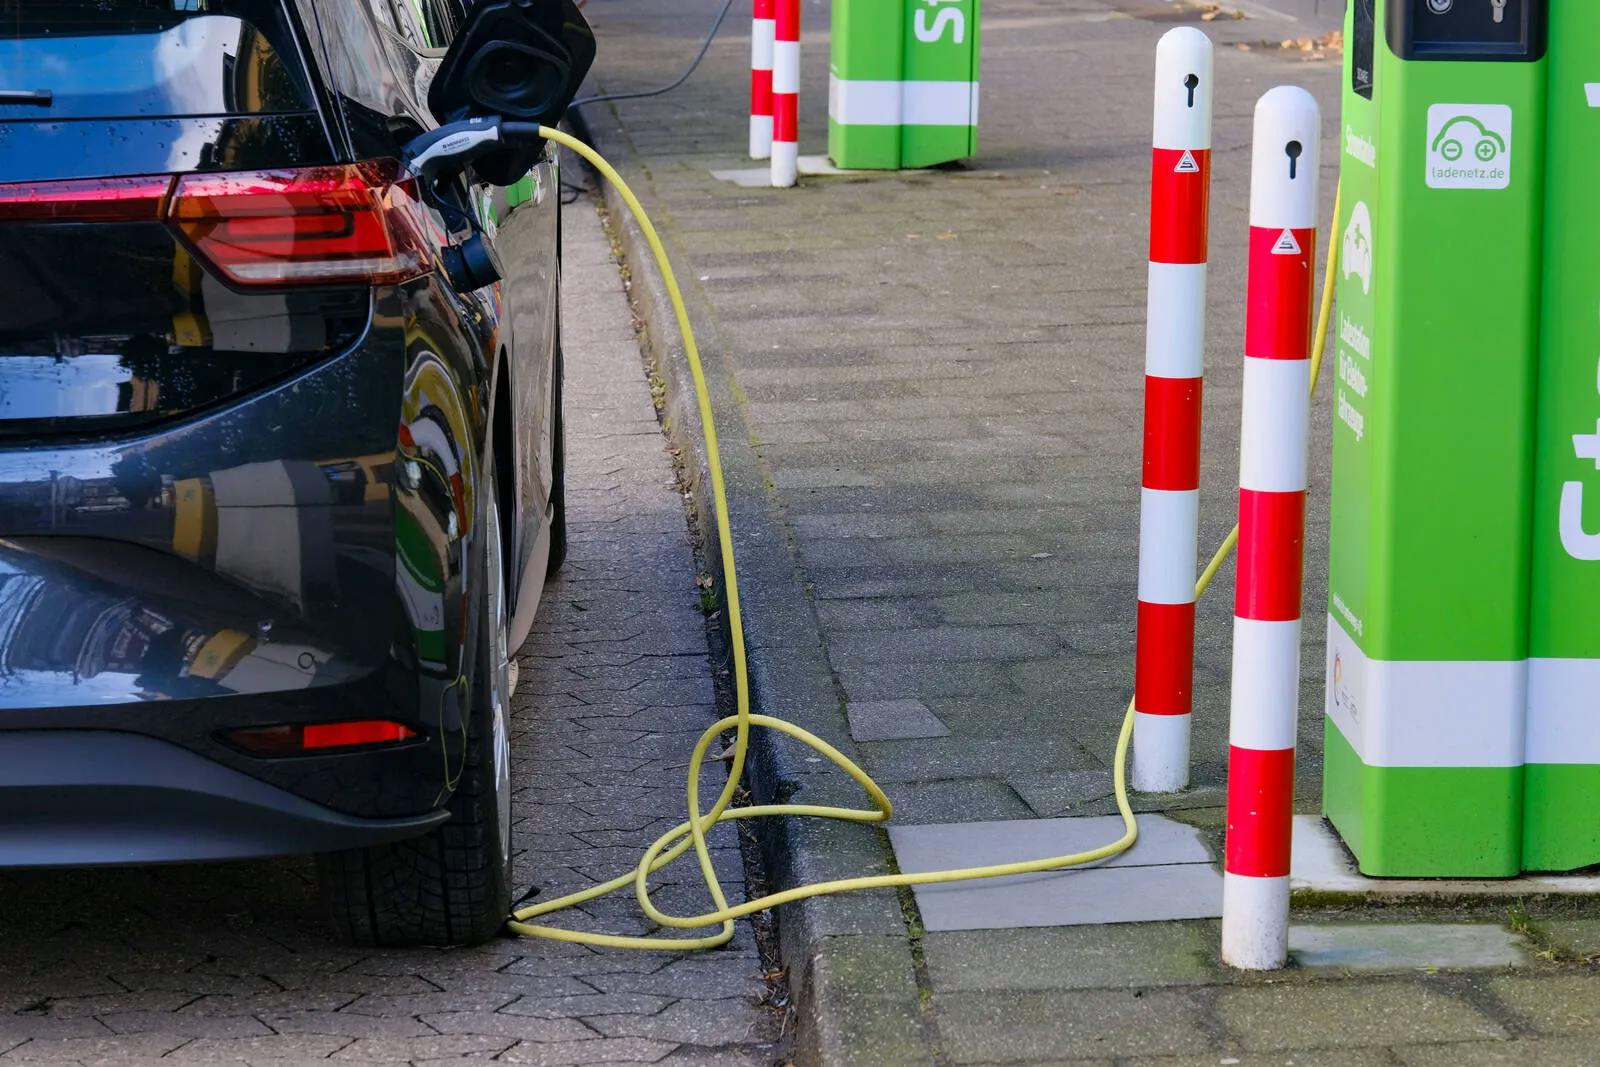 Regierung in Mecklenburg-Vorpommern bevorzugt Verbrenner gegenüber E-Autos